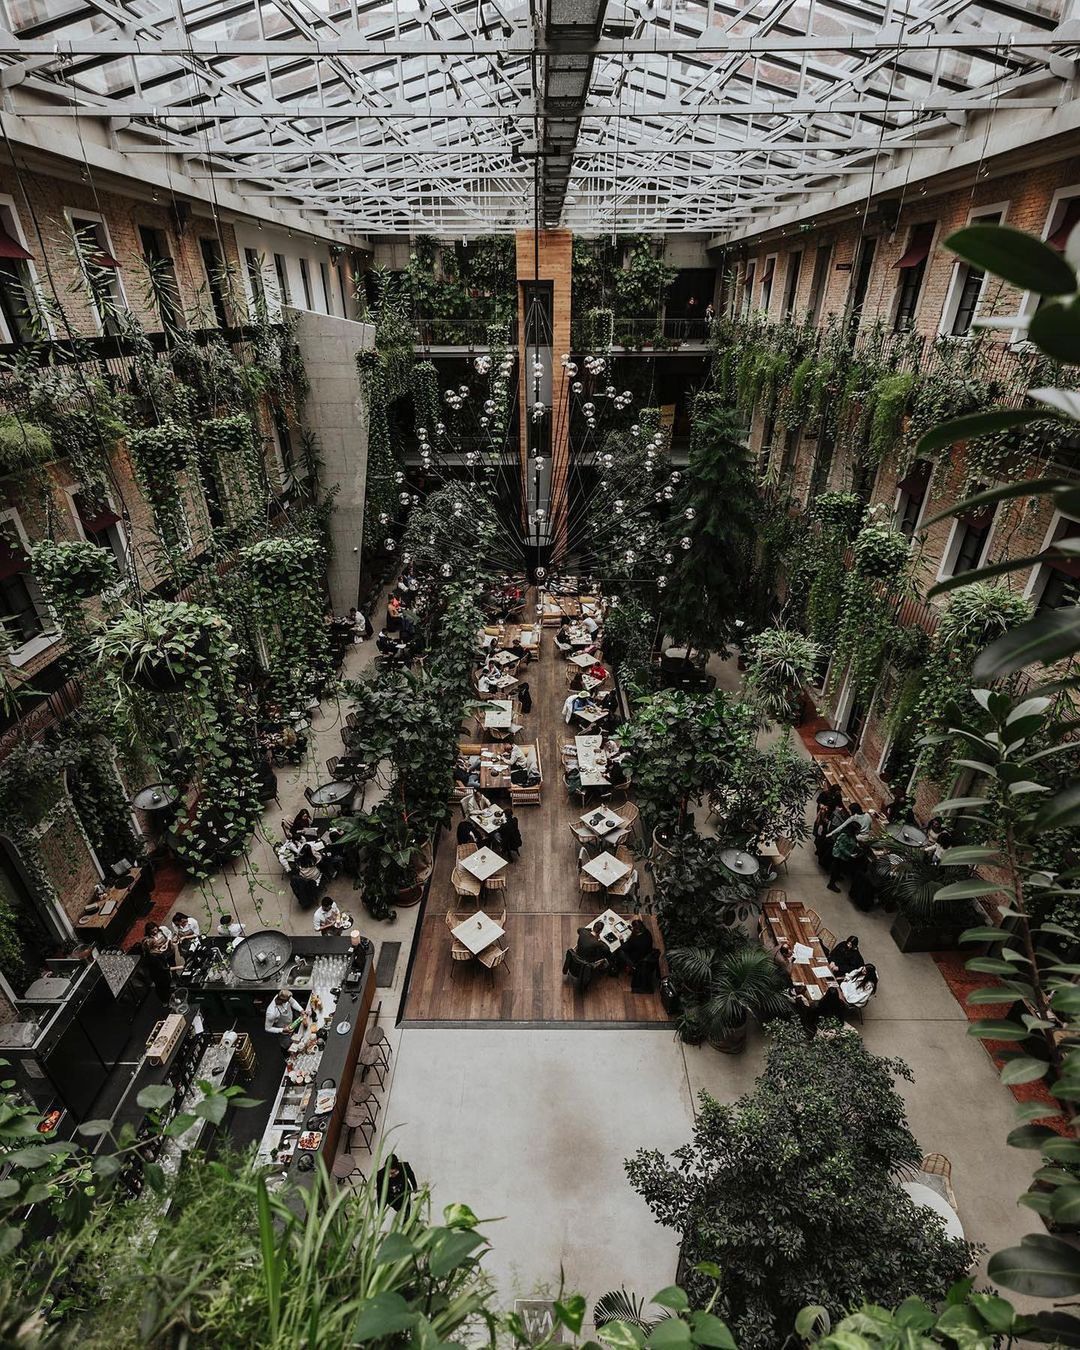 Dobrodošli v džungli: restavracija v Budimpešti, ki je osvojila Instagram